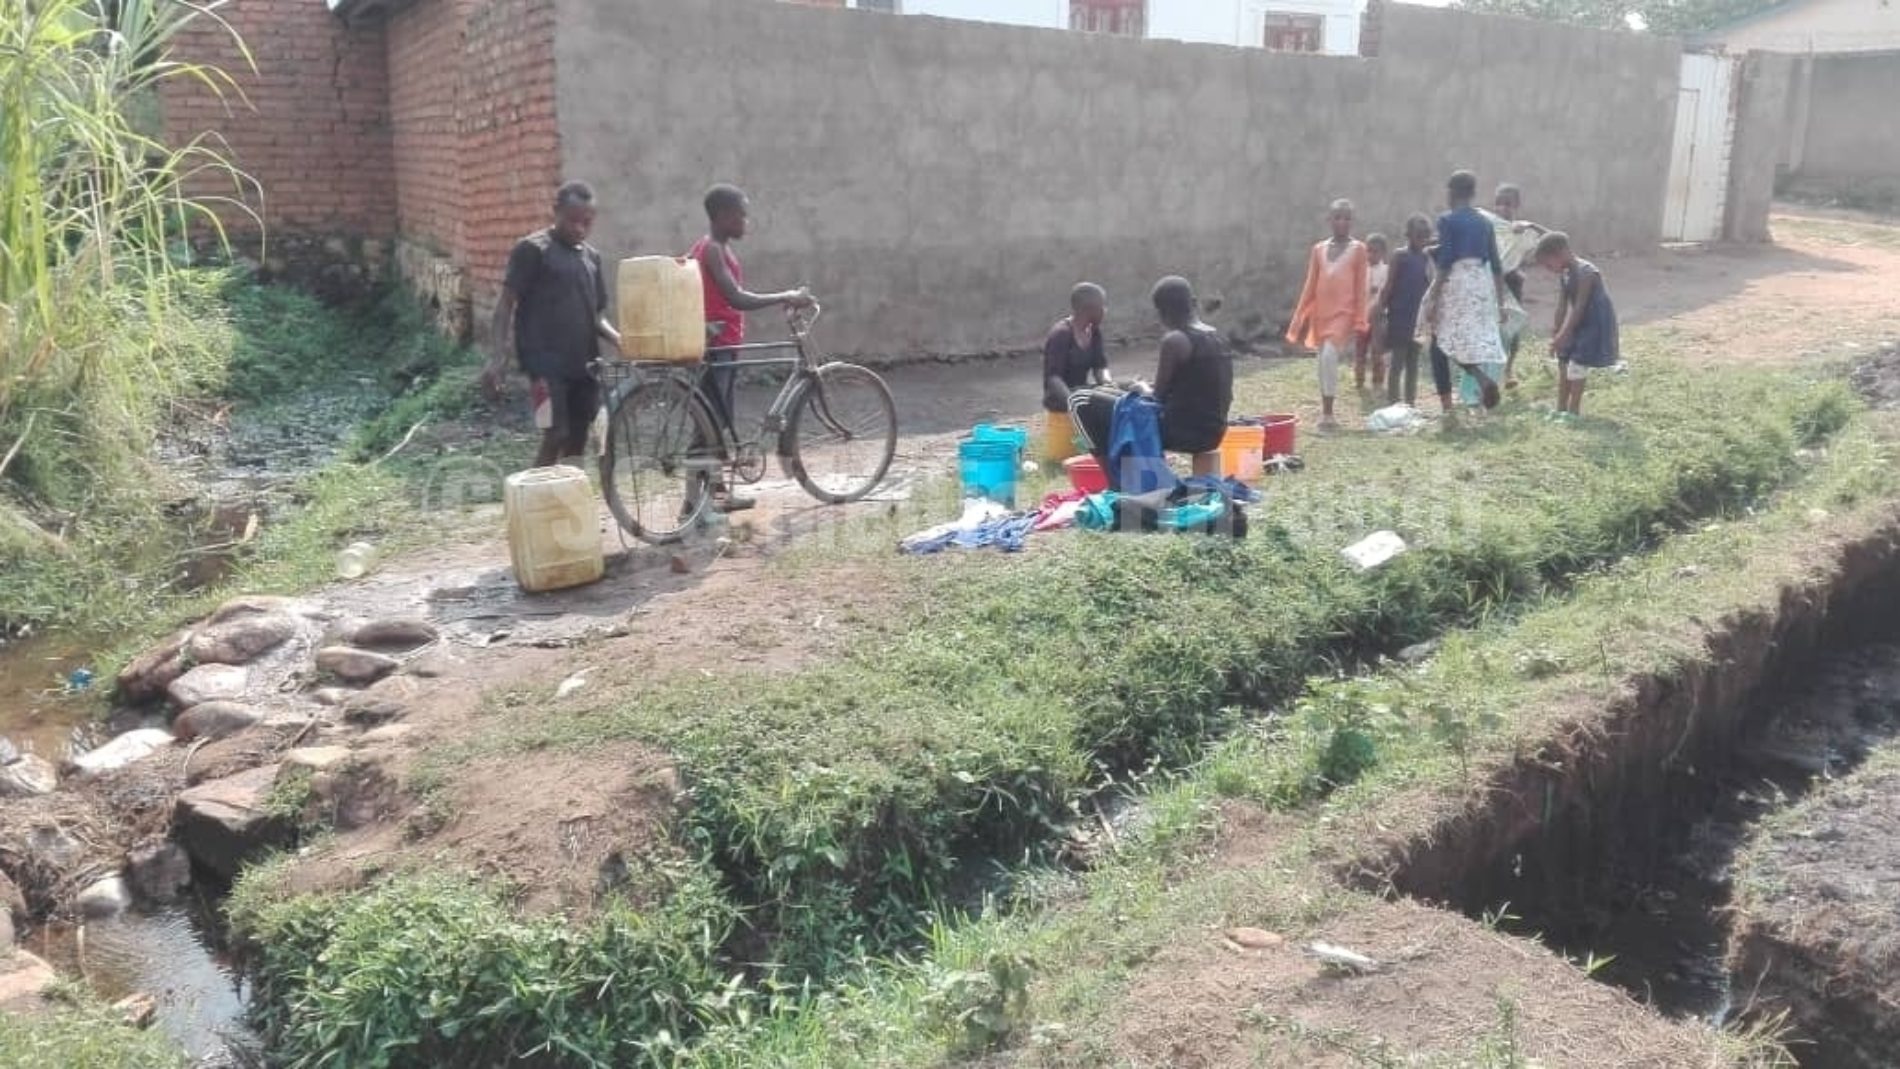 Makamba (Sud du pays) : Manque criant d’eau potable au quartier Kigwati 1, les habitants obligés de s’approvisionner dans des marais